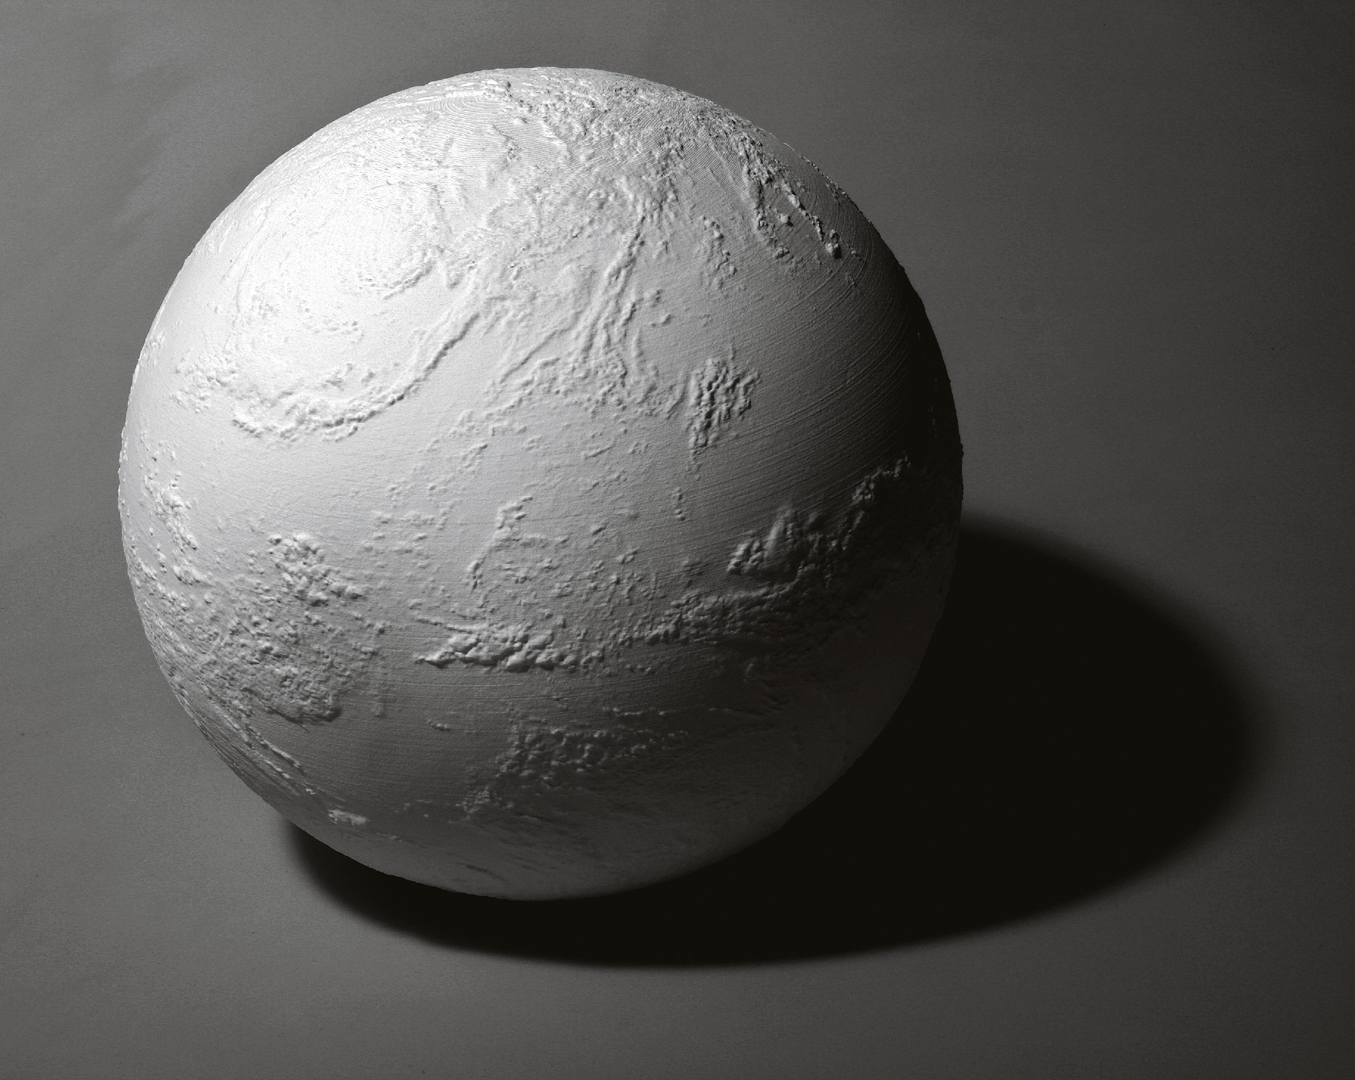 ©2009, Martin John Callanan, A Planetary Order (Terrestrial Cloud Globe)